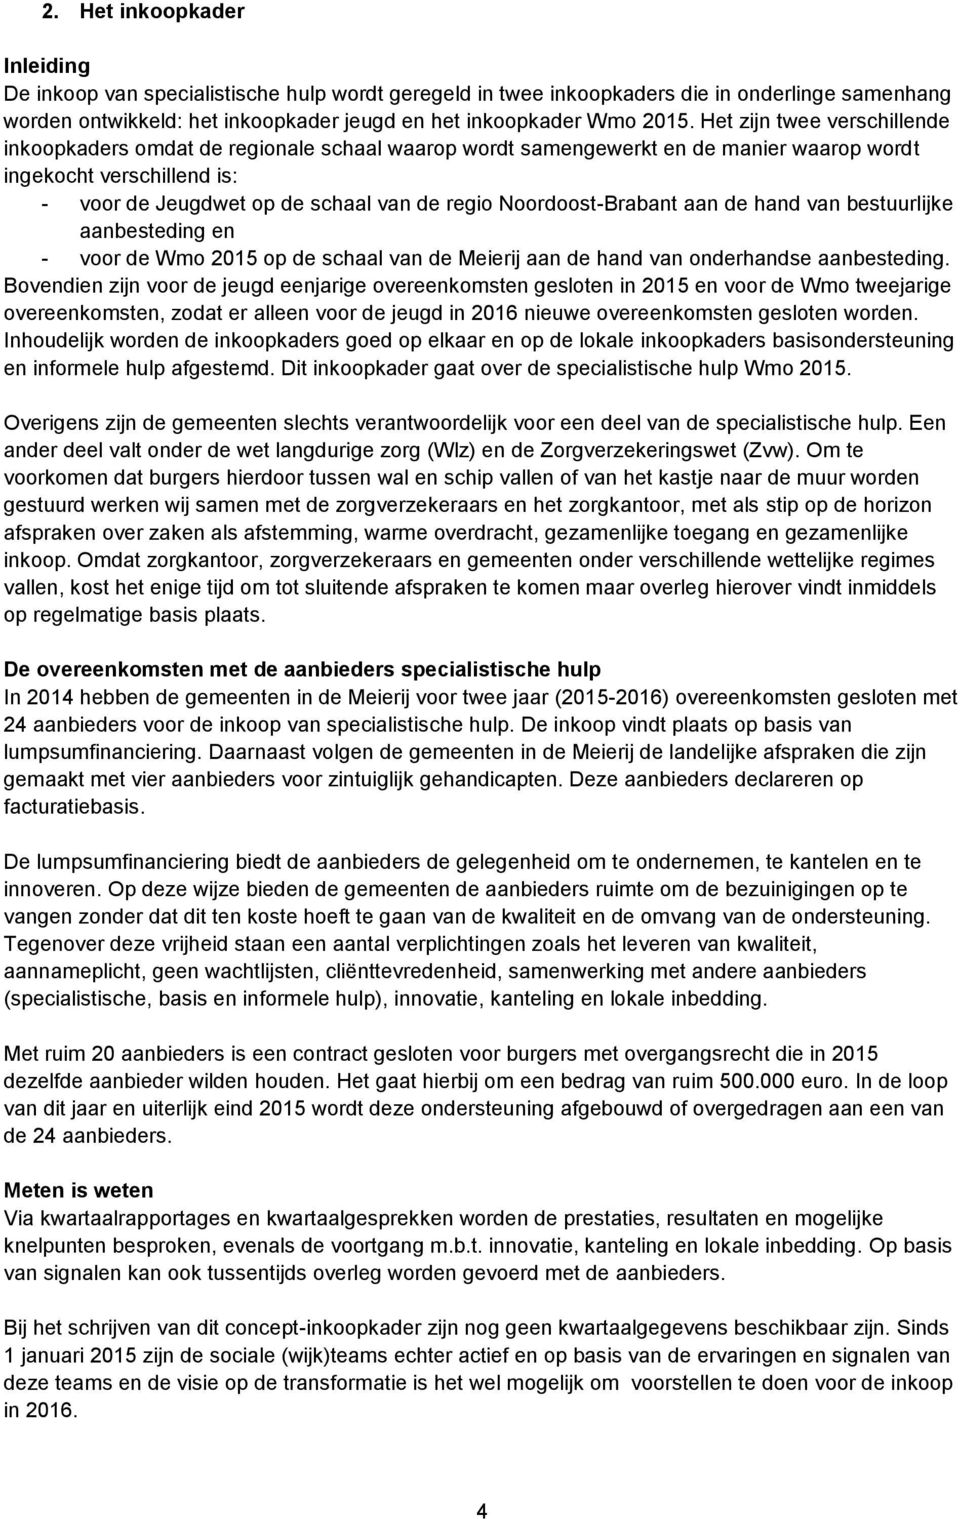 Noordoost-Brabant aan de hand van bestuurlijke aanbesteding en - voor de Wmo 2015 op de schaal van de Meierij aan de hand van onderhandse aanbesteding.